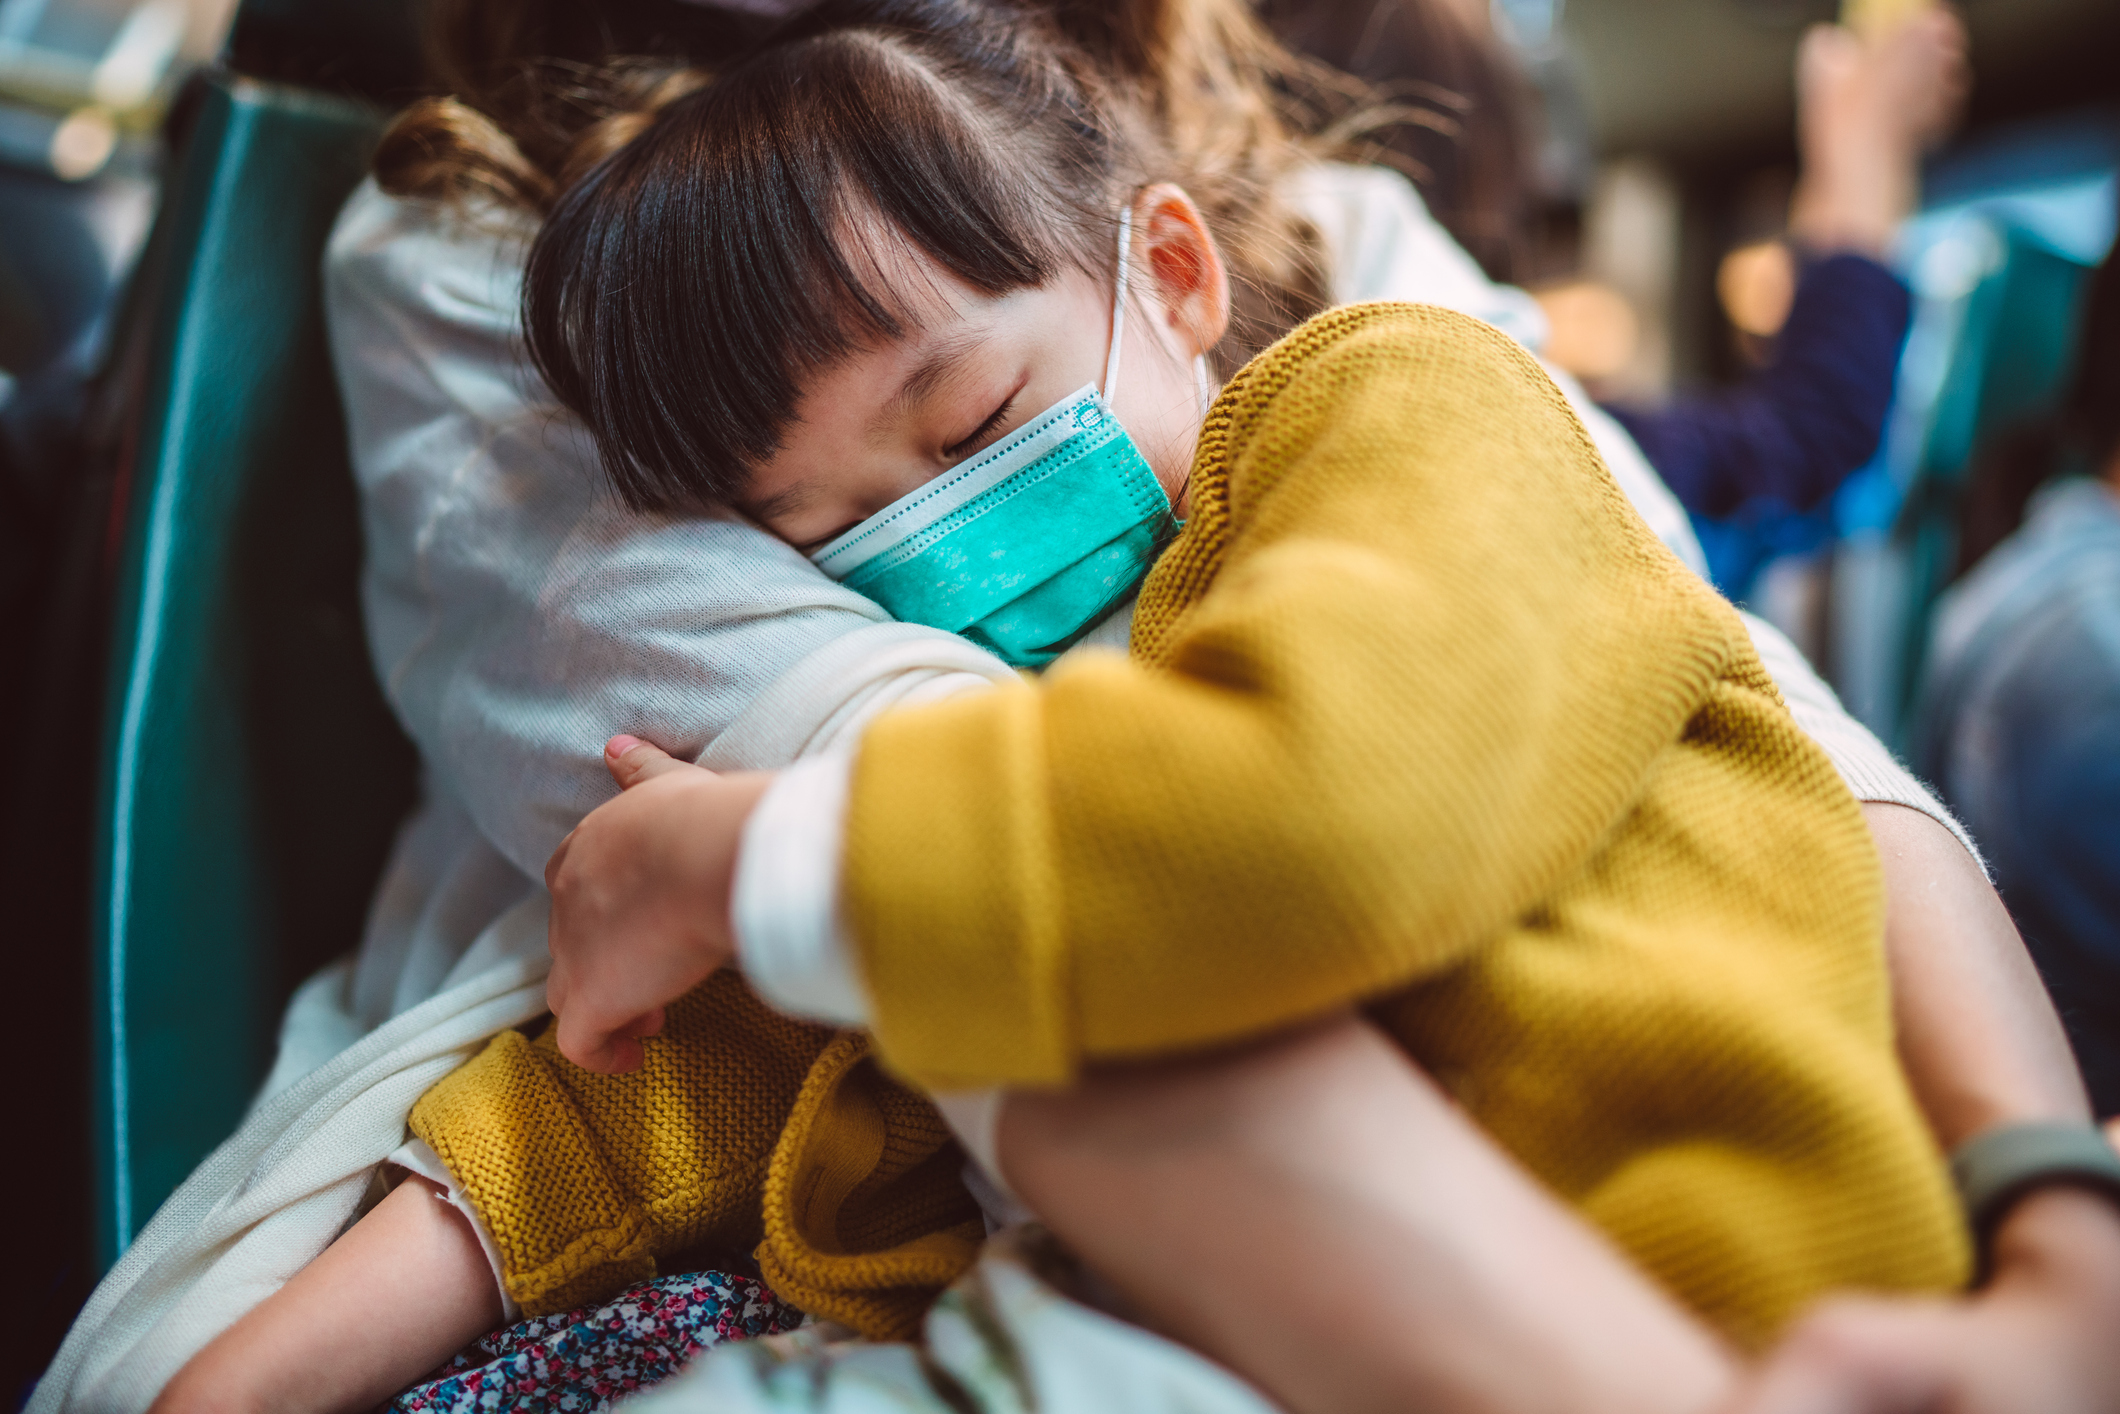 krankheitswelle in china: diese fakten sprechen gegen eine mit corona vergleichbare pandemie